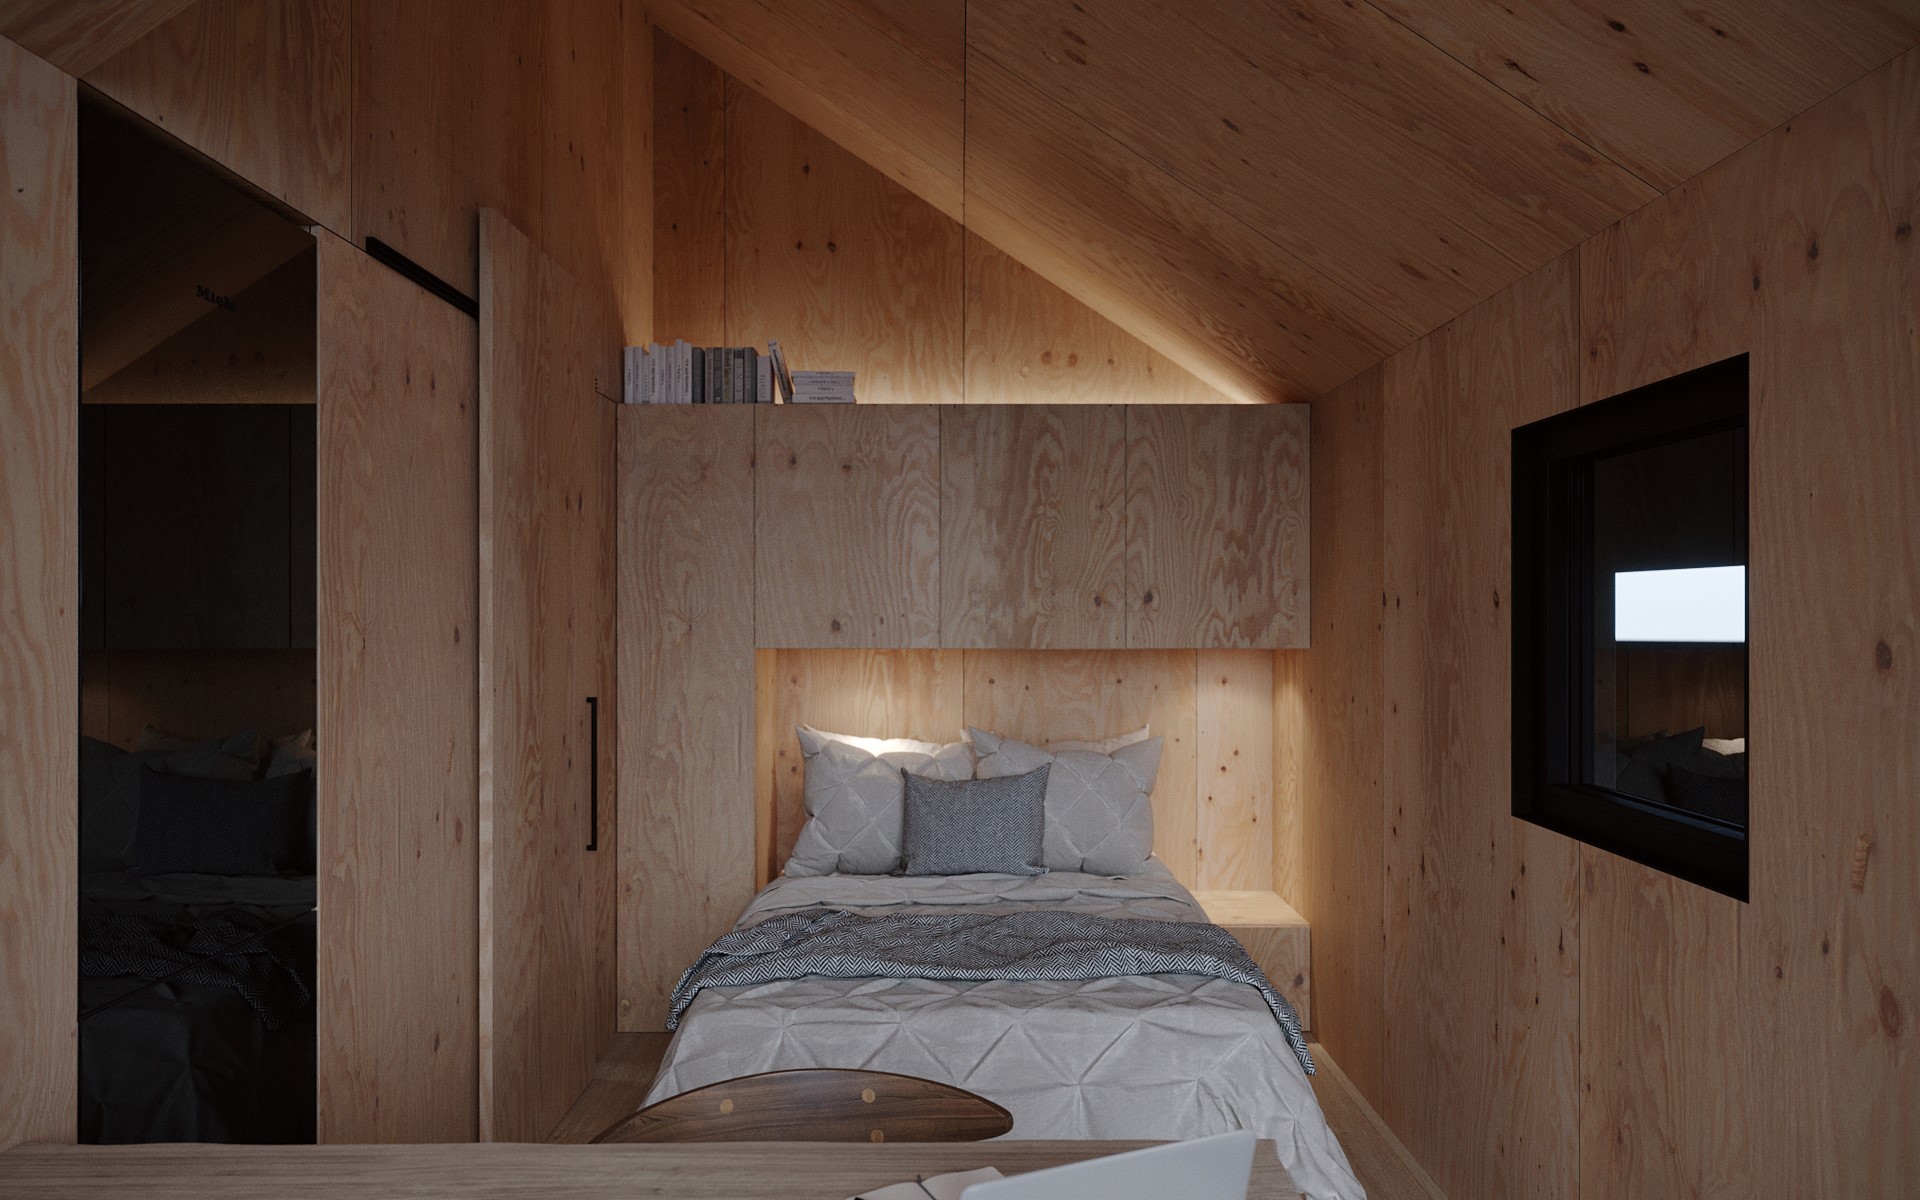 小屋里以天然原木建构出温馨的空间氛围。